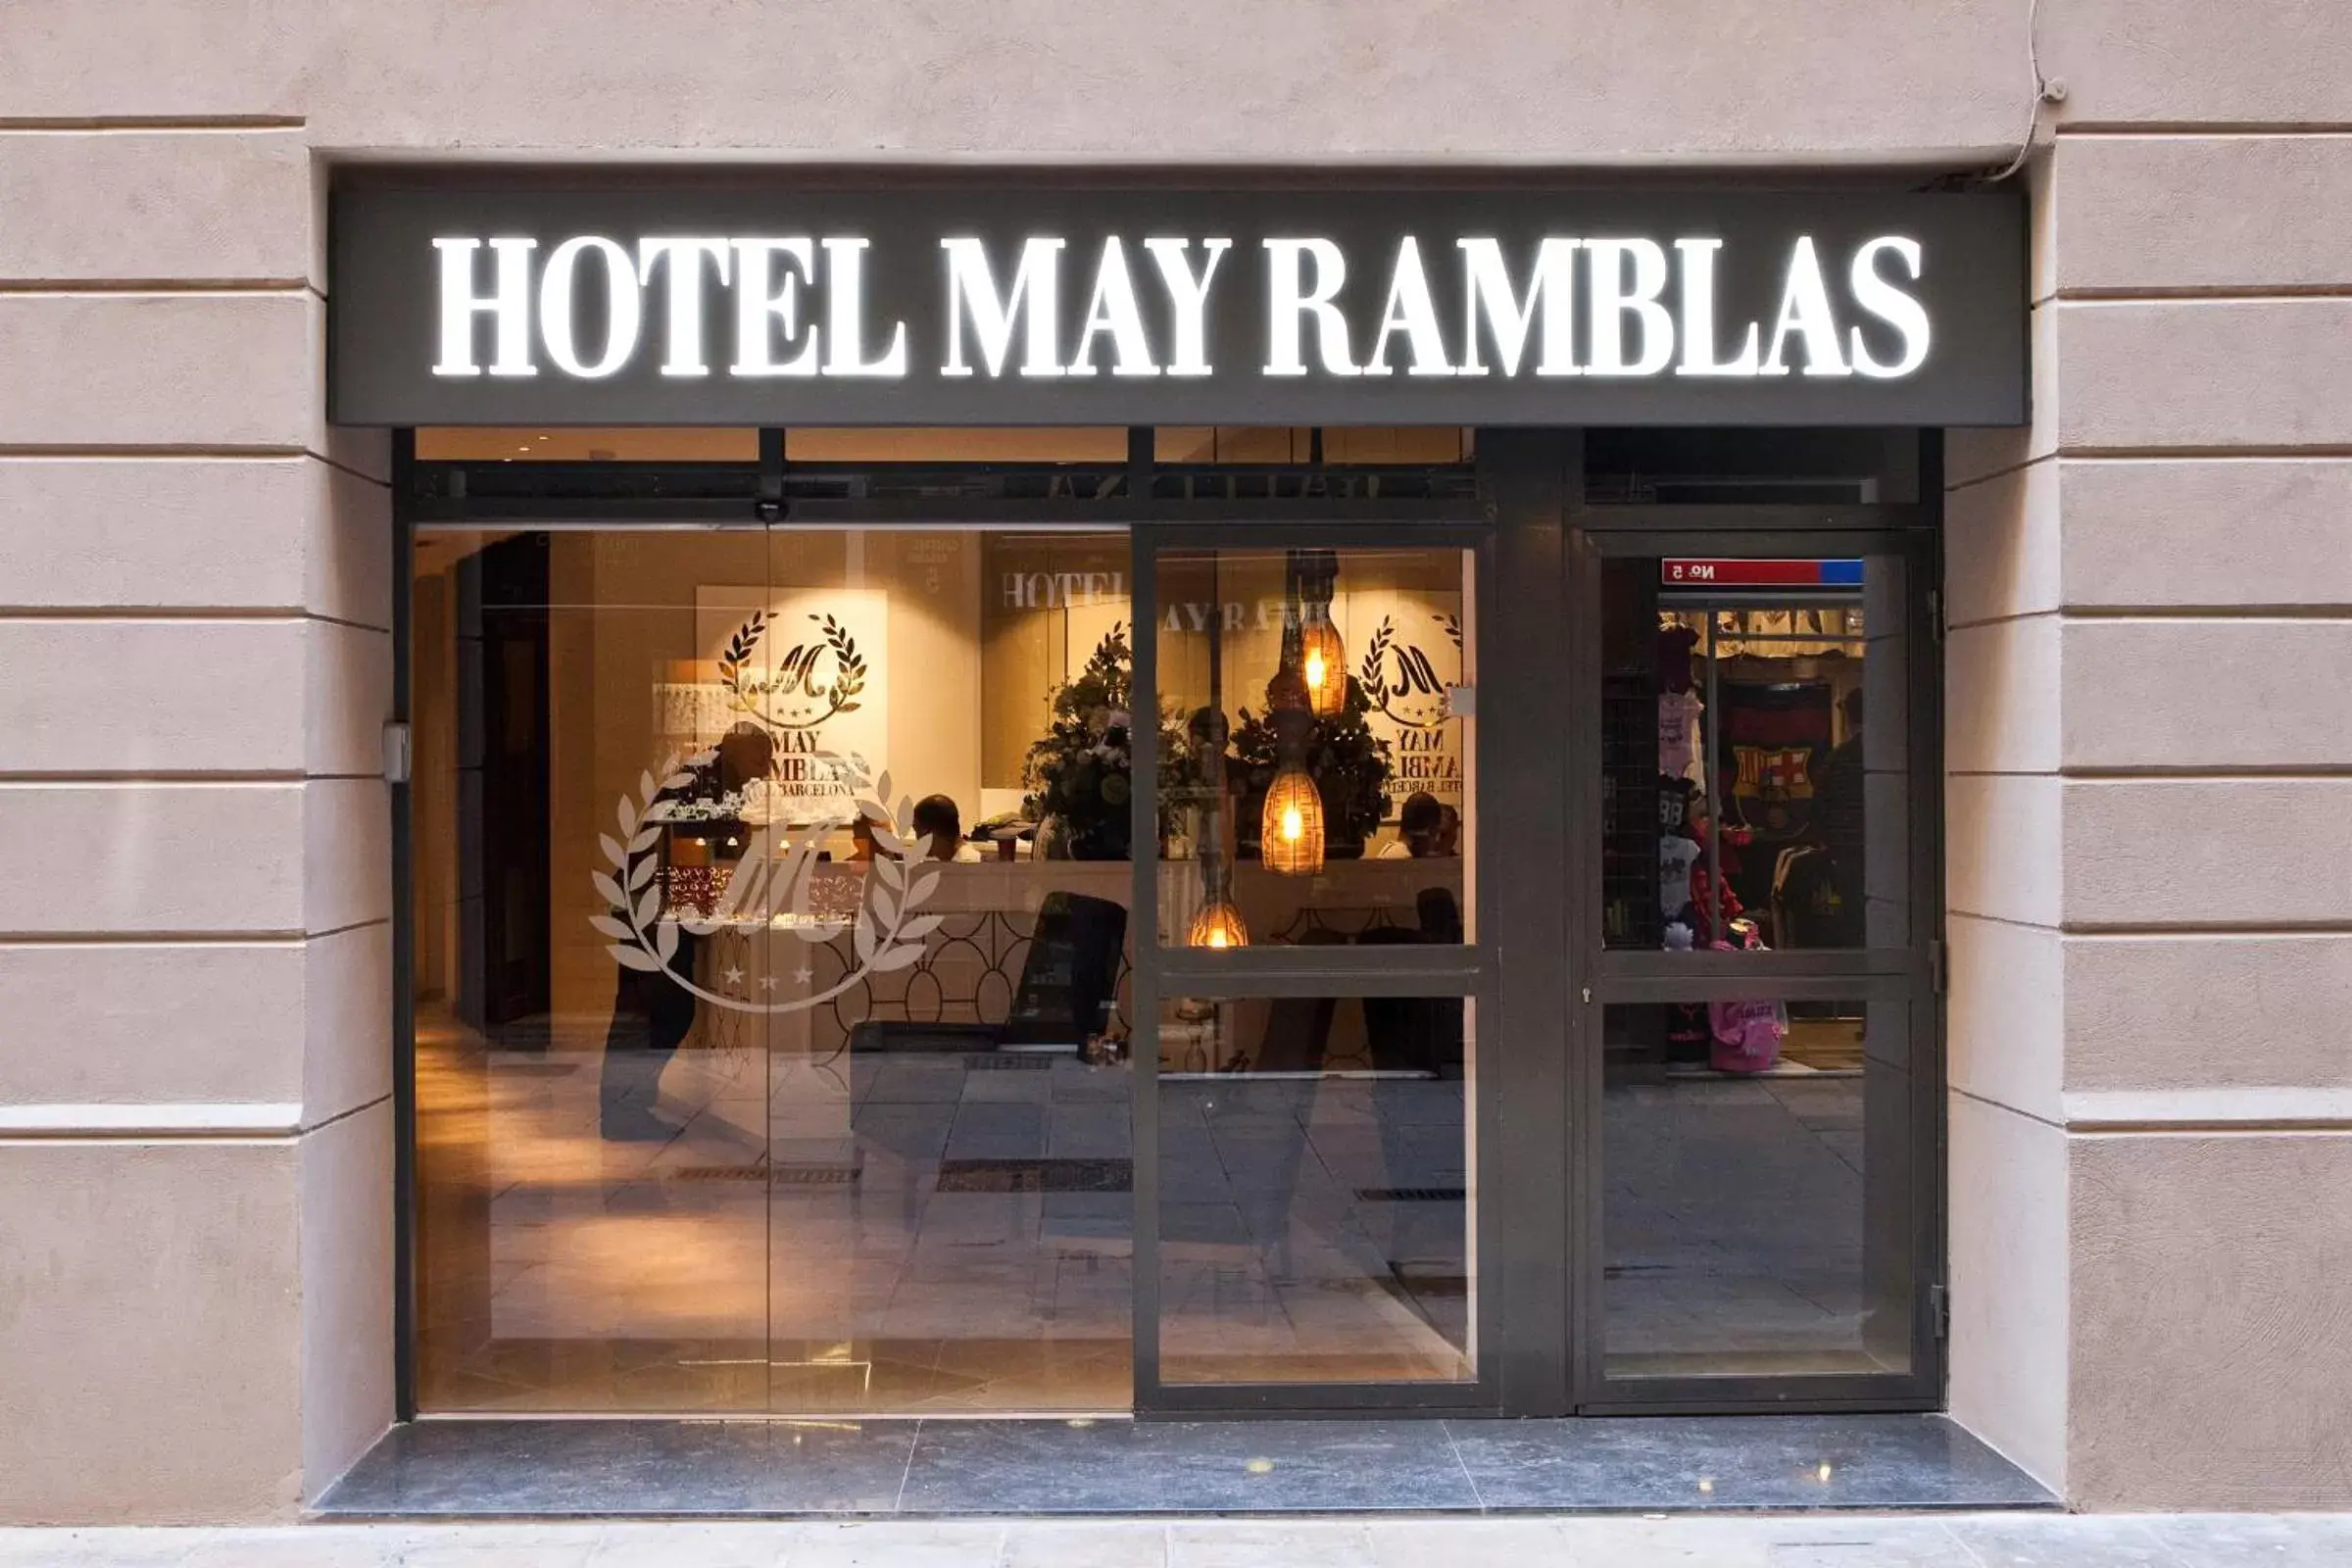 Facade/entrance in May Ramblas Hotel